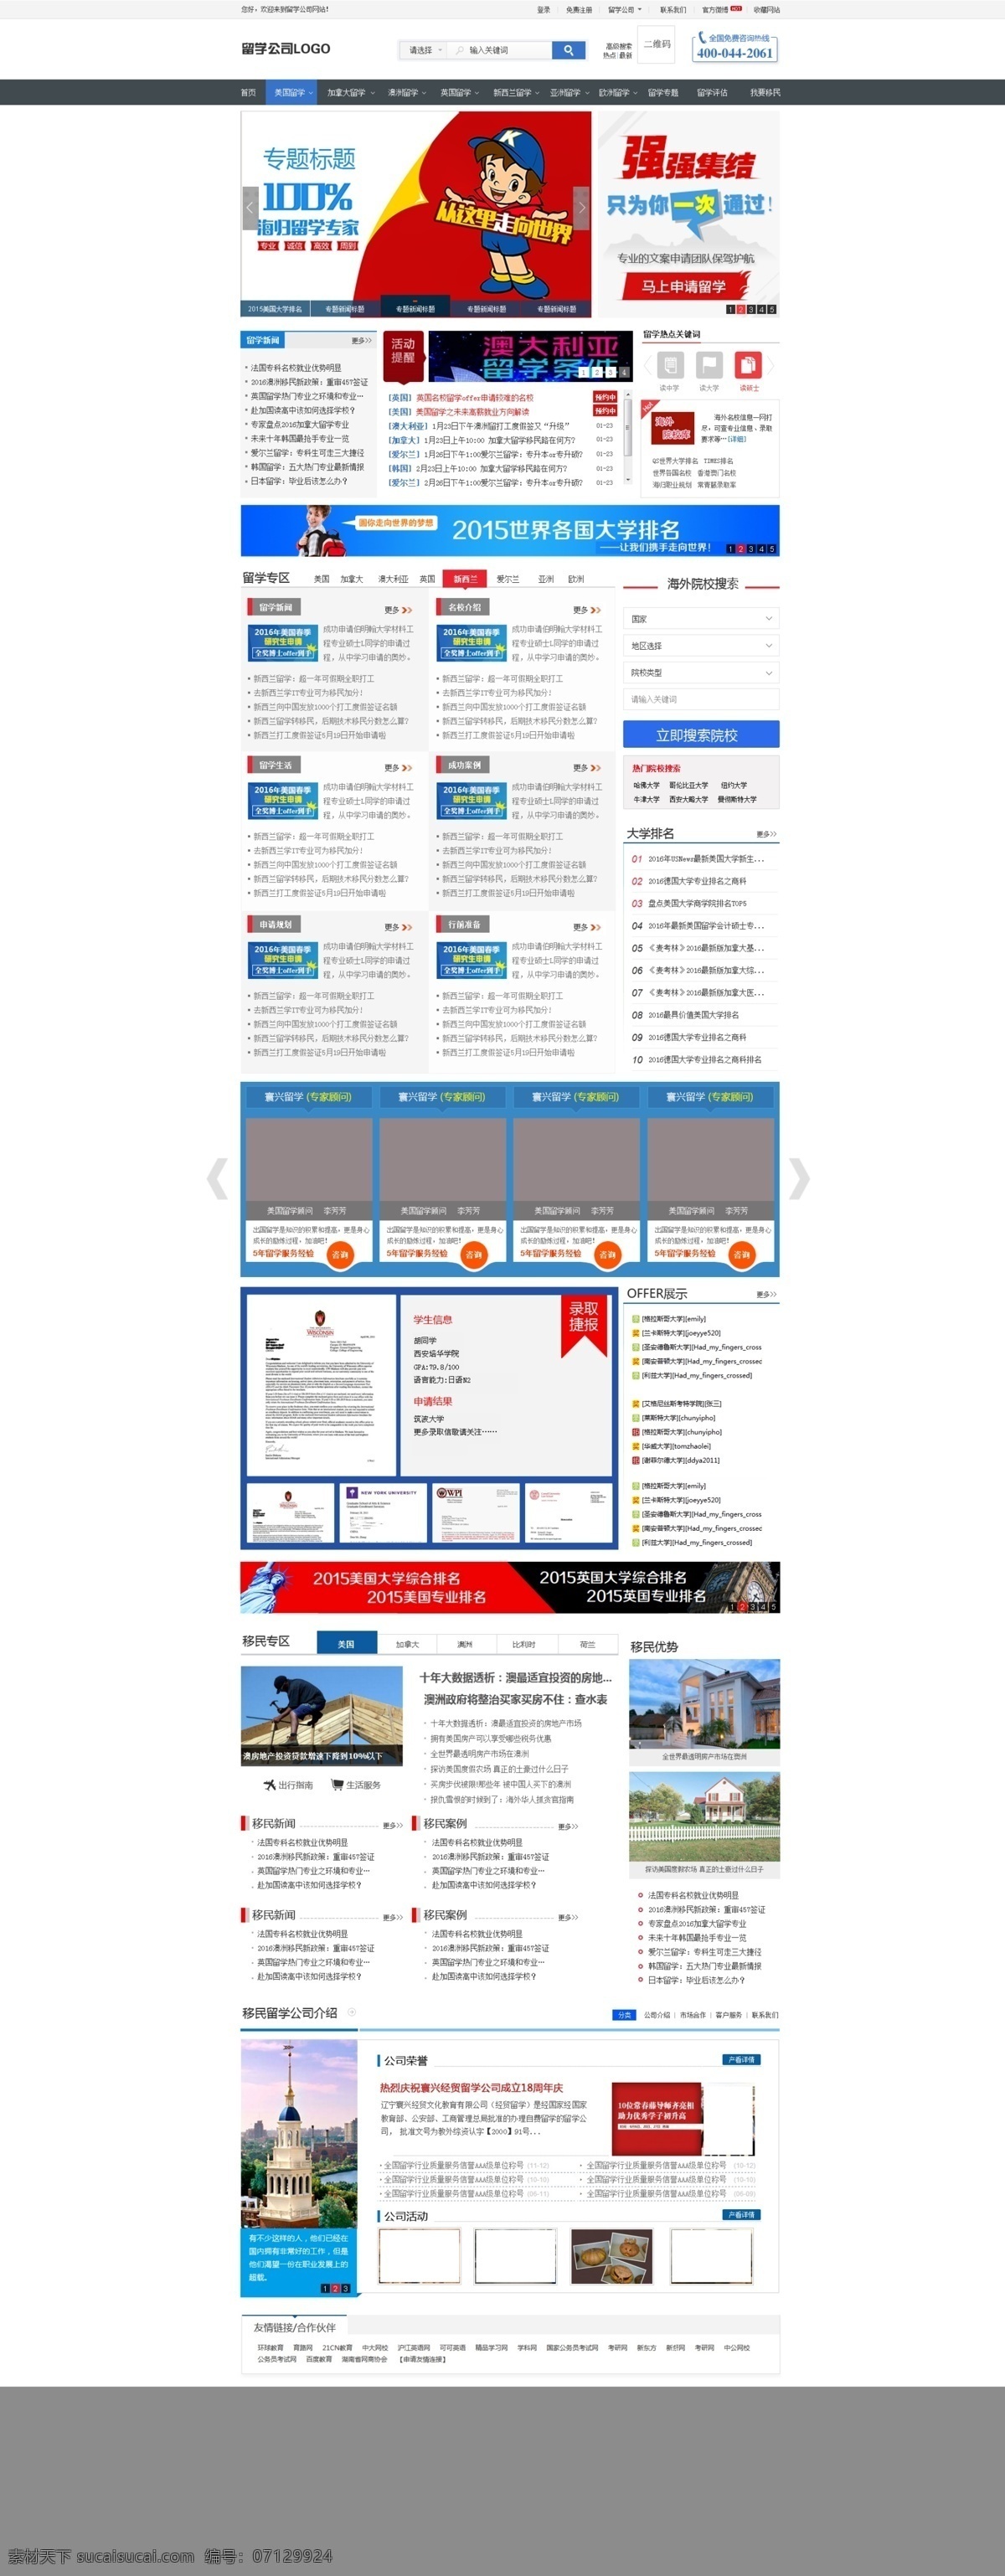 教育培训 行业 网站 页面 留学 培训 教育 网站页面设计 网页设计 web 界面设计 中文模板